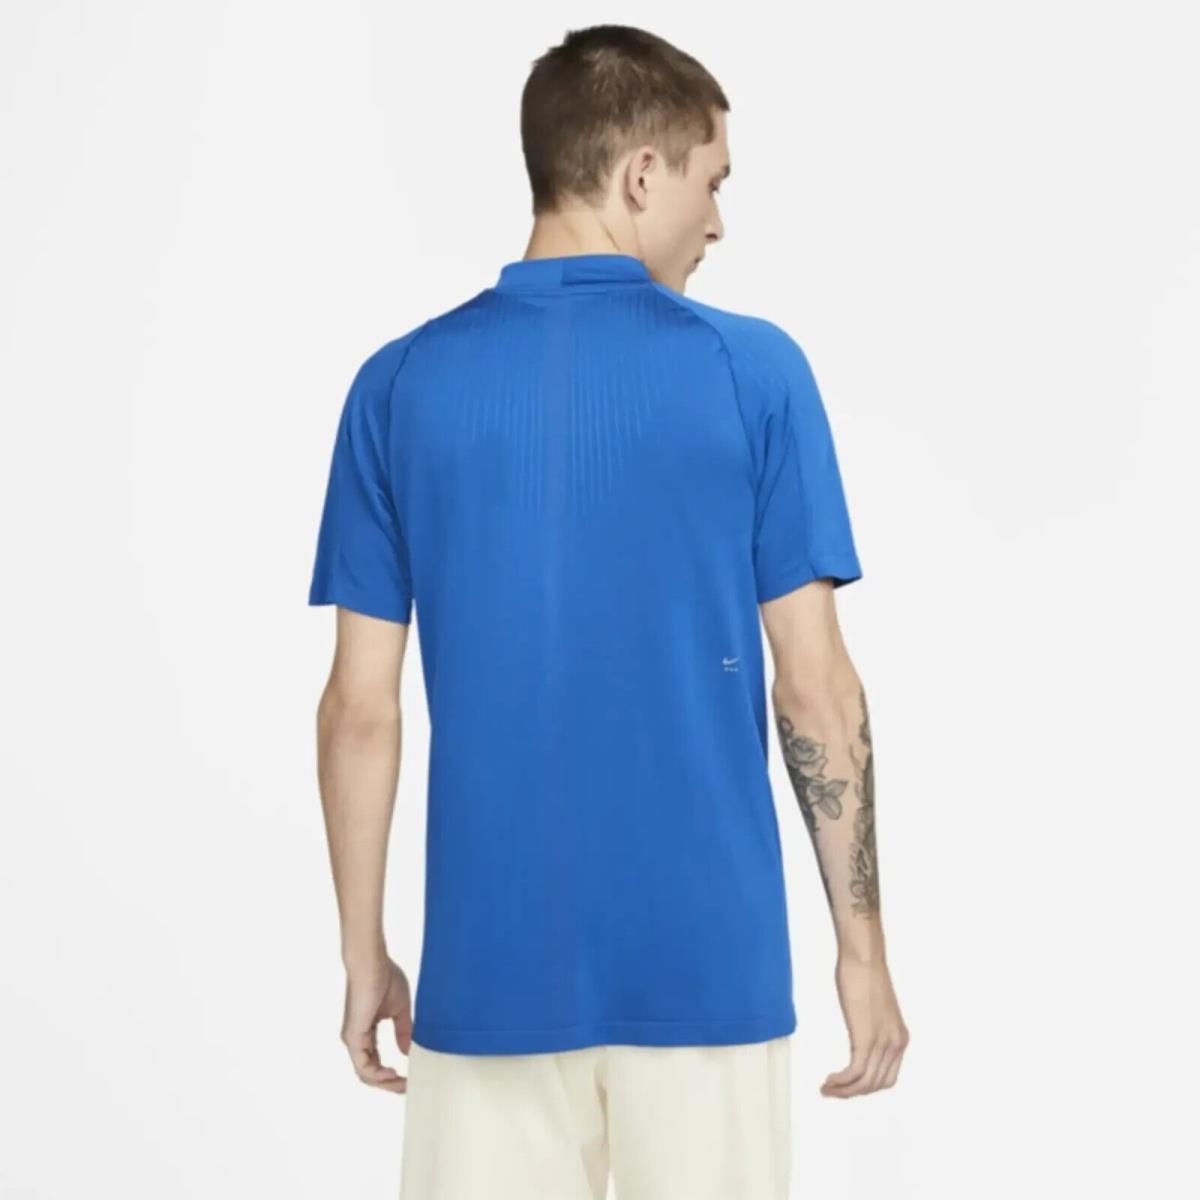 Nike clothing  - Blue 1